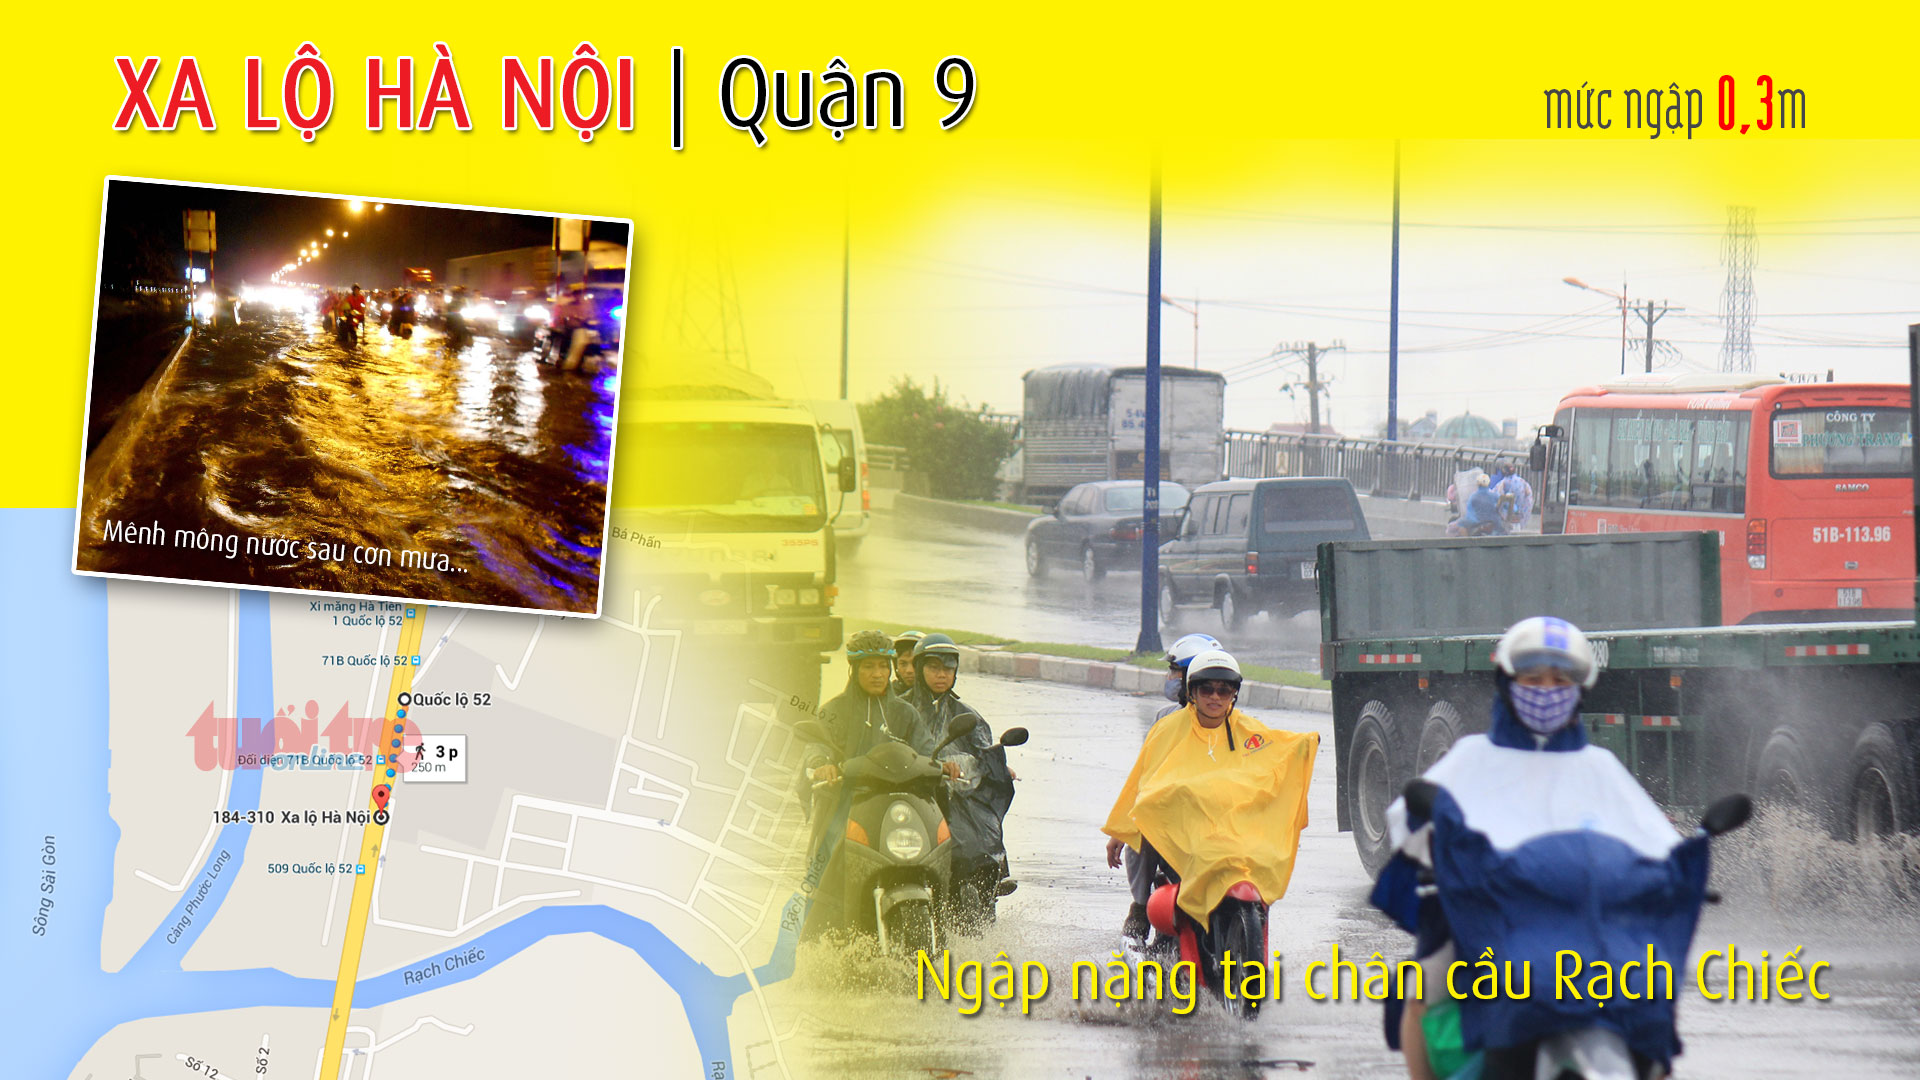 Điểm ngập ở chân cầu Rạch Chiếc (Quận 9), xa lộ Hà Nội, thuộc 1 trong 66 điểm ngập ở TP.HCM trong cơn mưa chiều 15-9-2015 - Đồ họa: Việt Anh - T.Thiên